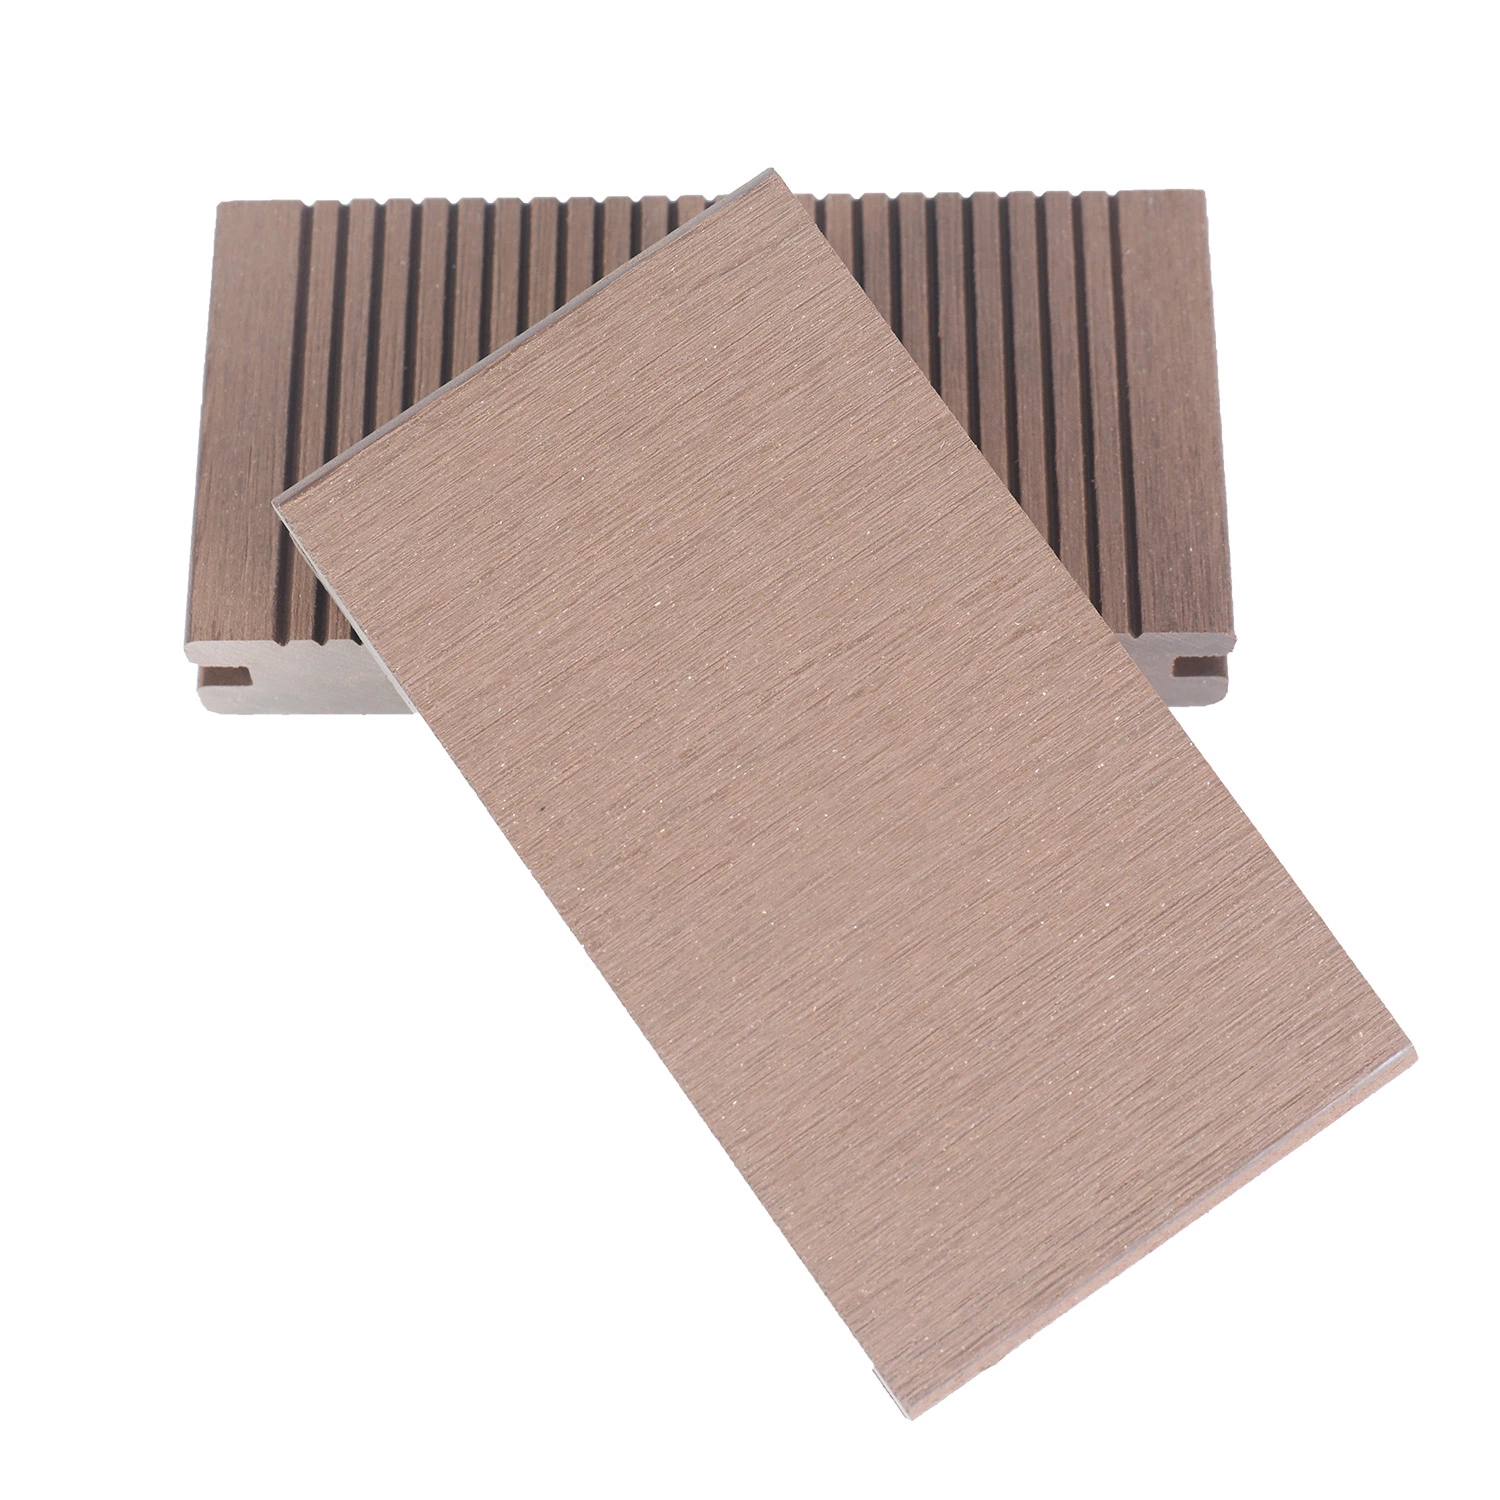 Ocox compuesto de plástico impermeable de madera maciza de madera pisos Revestimientos de WPC al aire libre